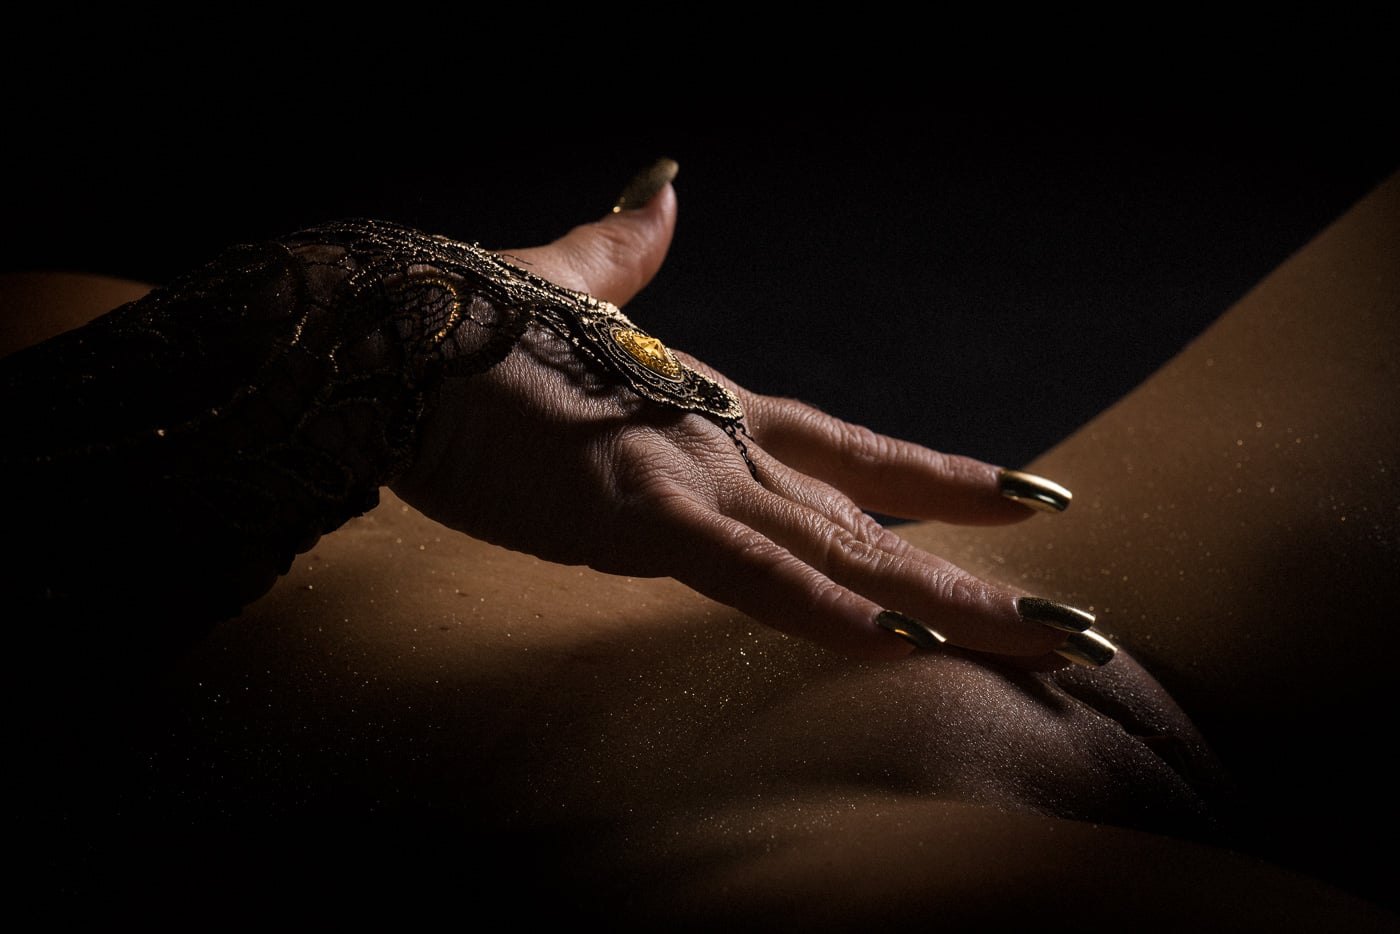 Erotisk fotografi af kvindehånd som rører ved sit køn